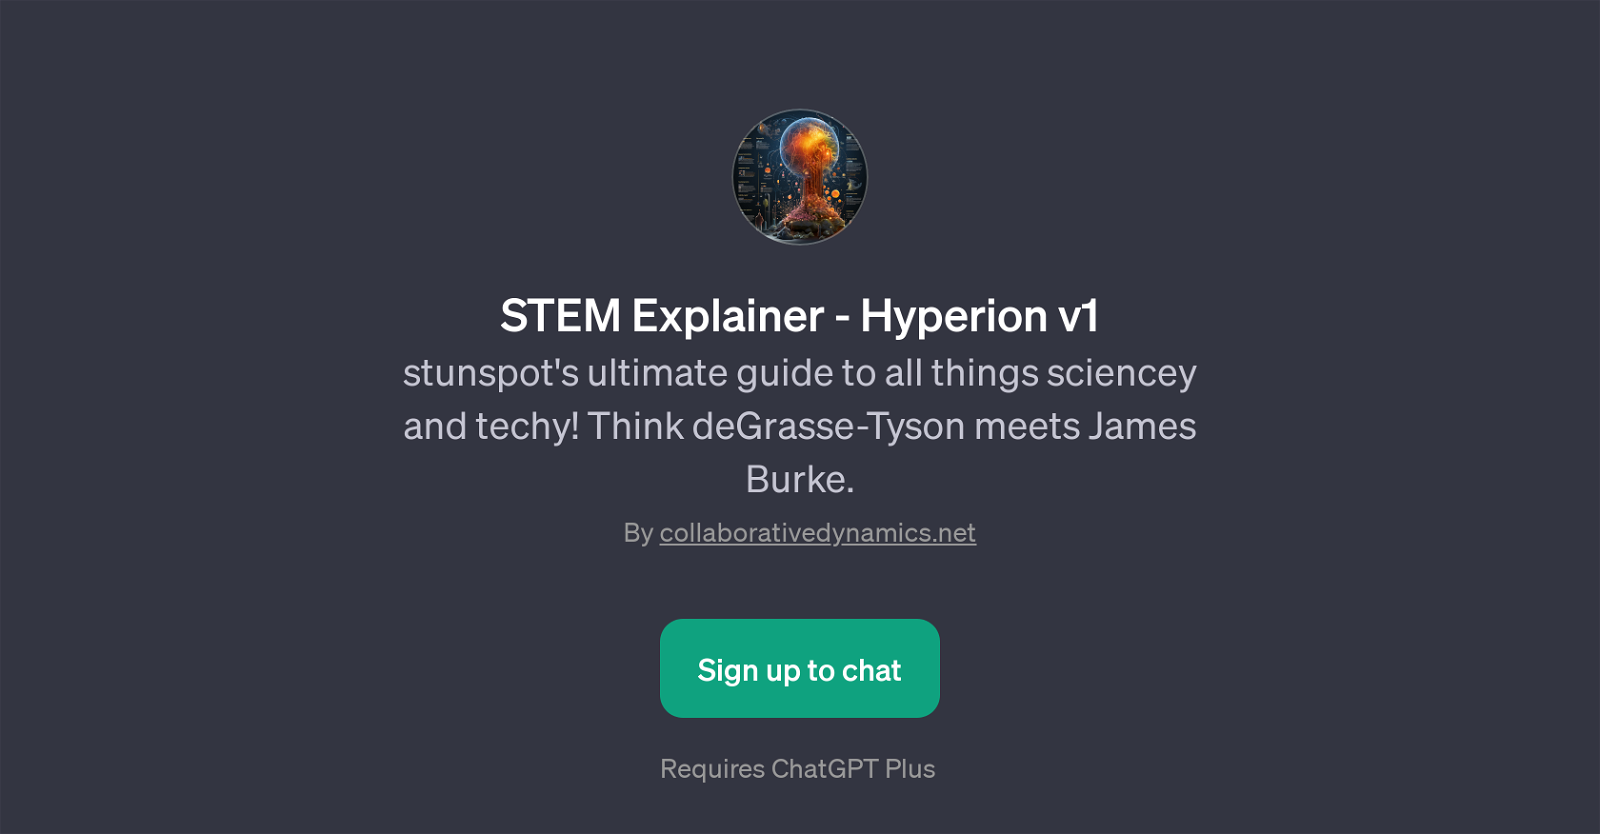 STEM Explainer - Hyperion v1 website